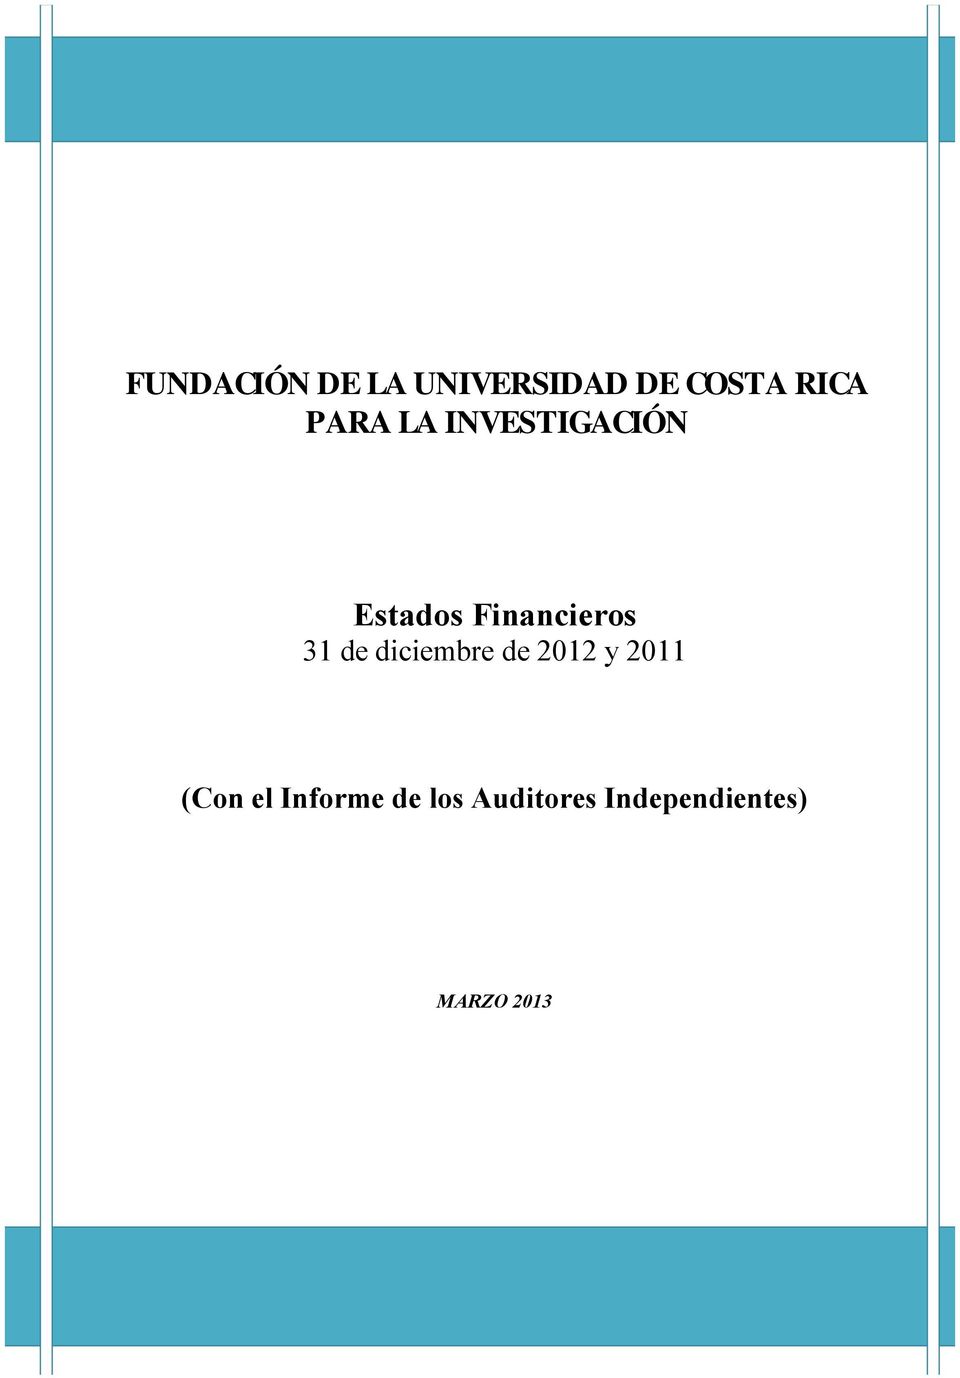 2011 (Con el Informe de los Auditores Independientes) MARZO